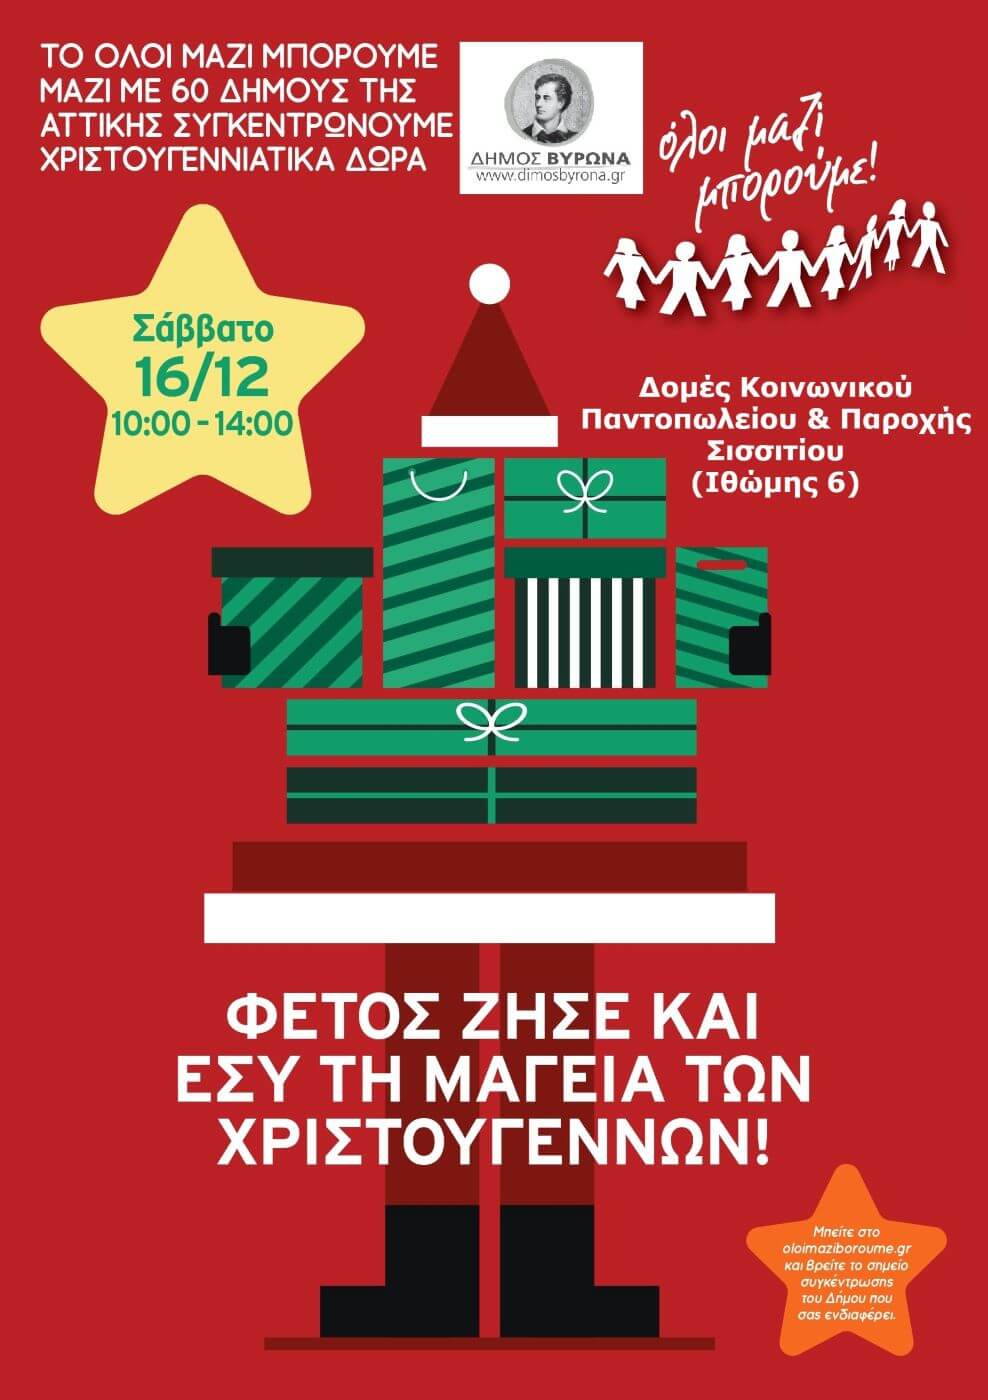 Δήμος Βύρωνα: Συγκεντρώνουμε χριστουγεννιάτικα δώρα για τα παιδιά άπορων οικογενειών